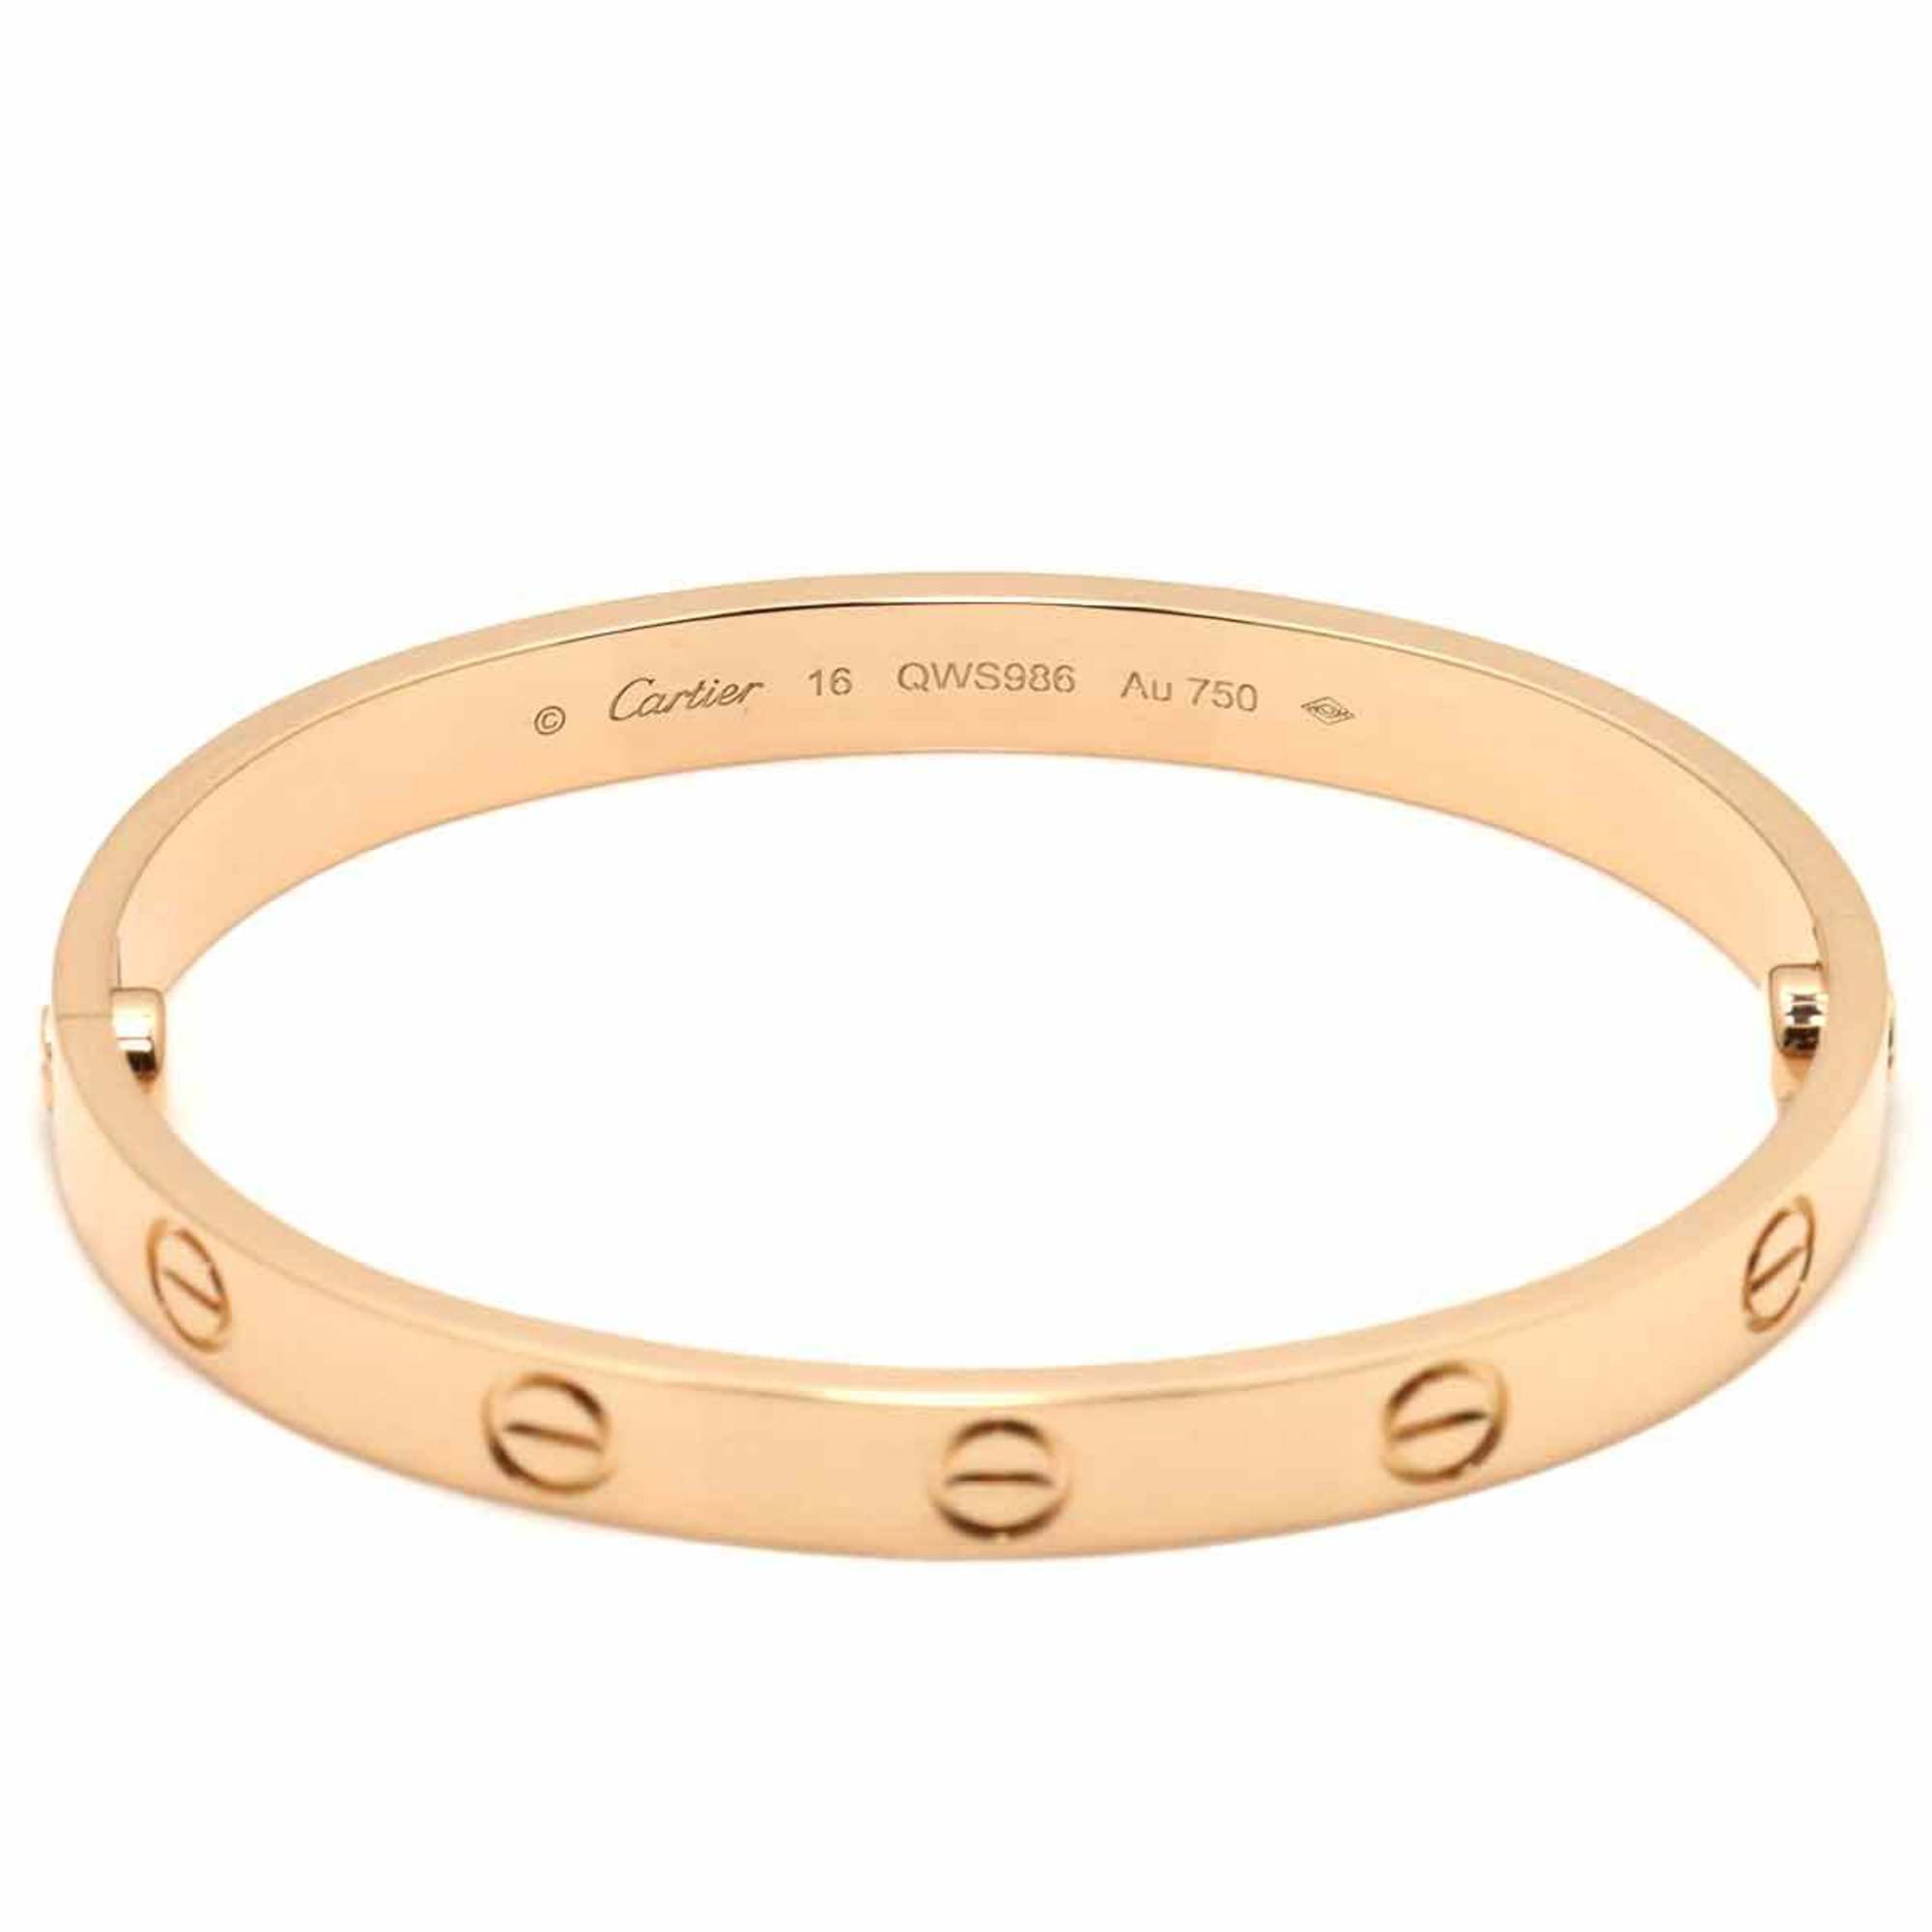 Cartier Love Bracelet #16 K18 PG Pink Gold 750 Bangle